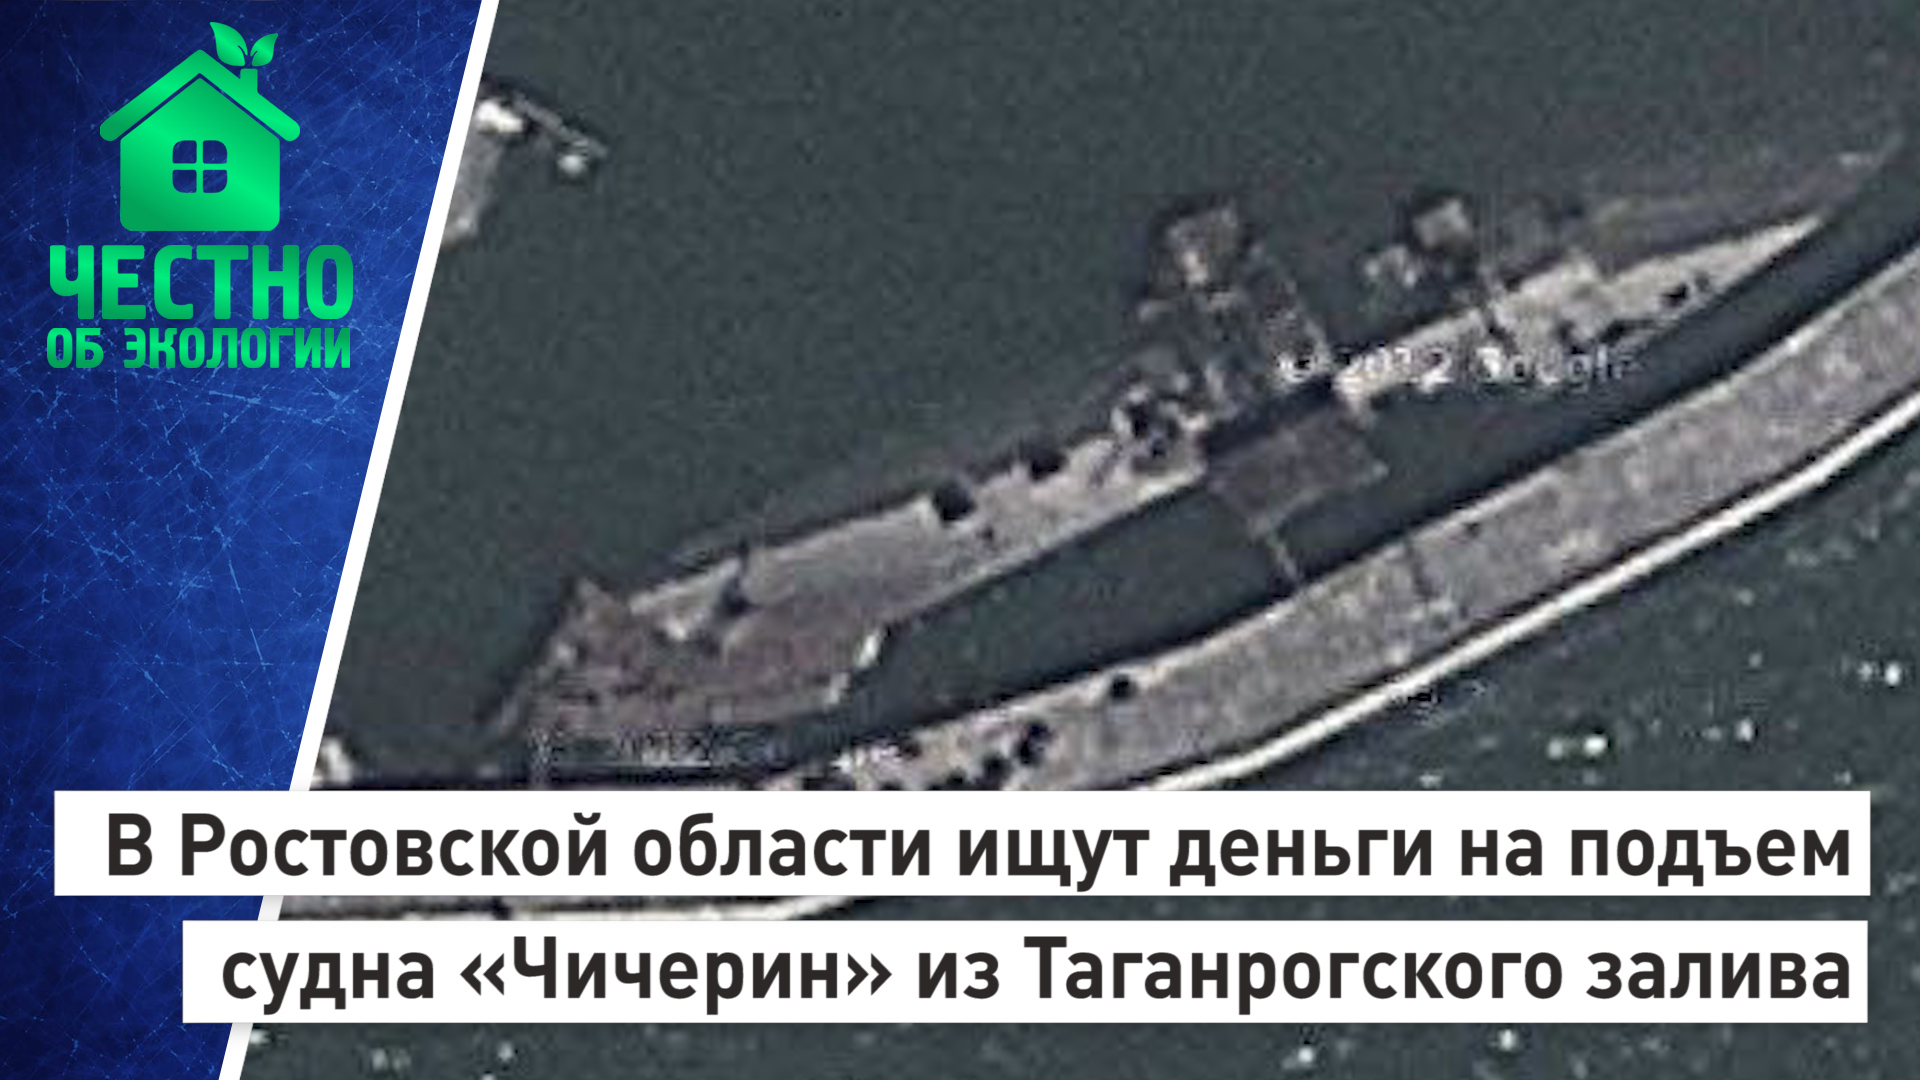 В Ростовской области ищут деньги на подъем судна «Чичерин» из Таганрогского залива.